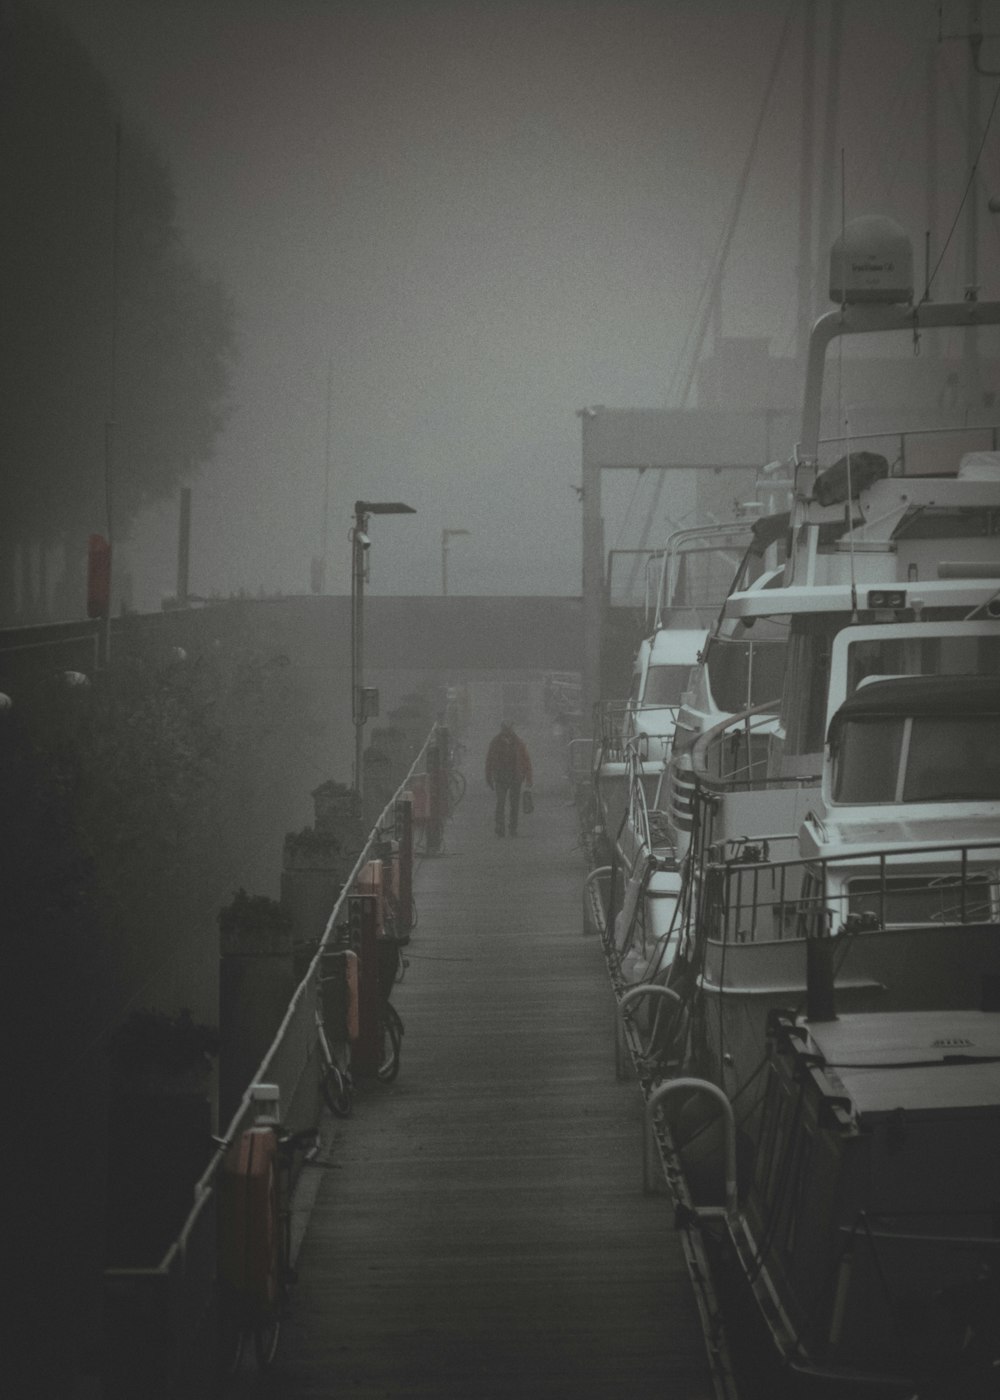 a foggy day at a marina with boats docked